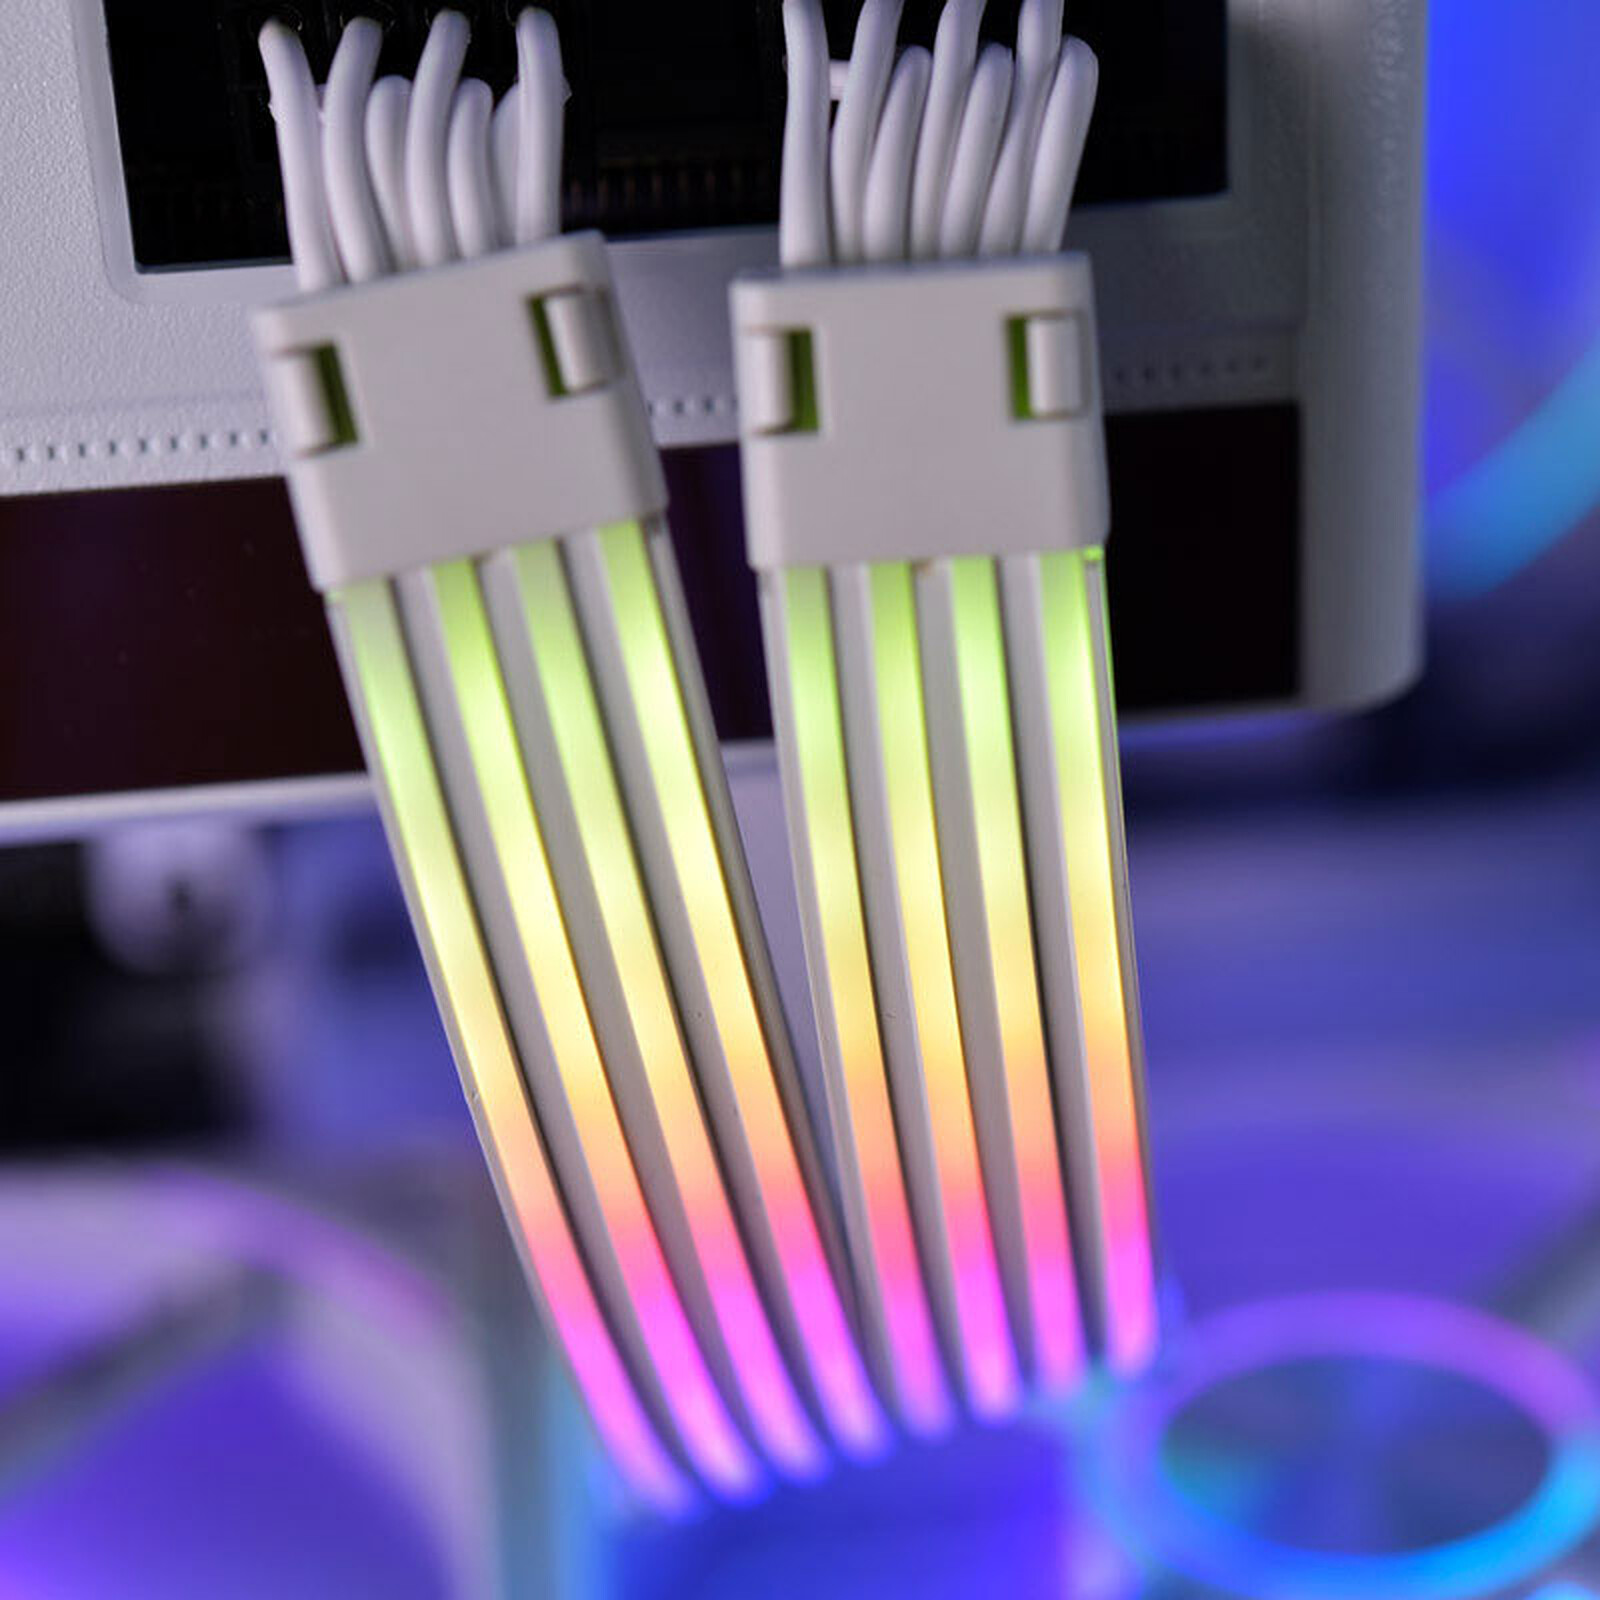 Lian Li Strimer : le premier câble d'alimentation 24 broches tout RGB